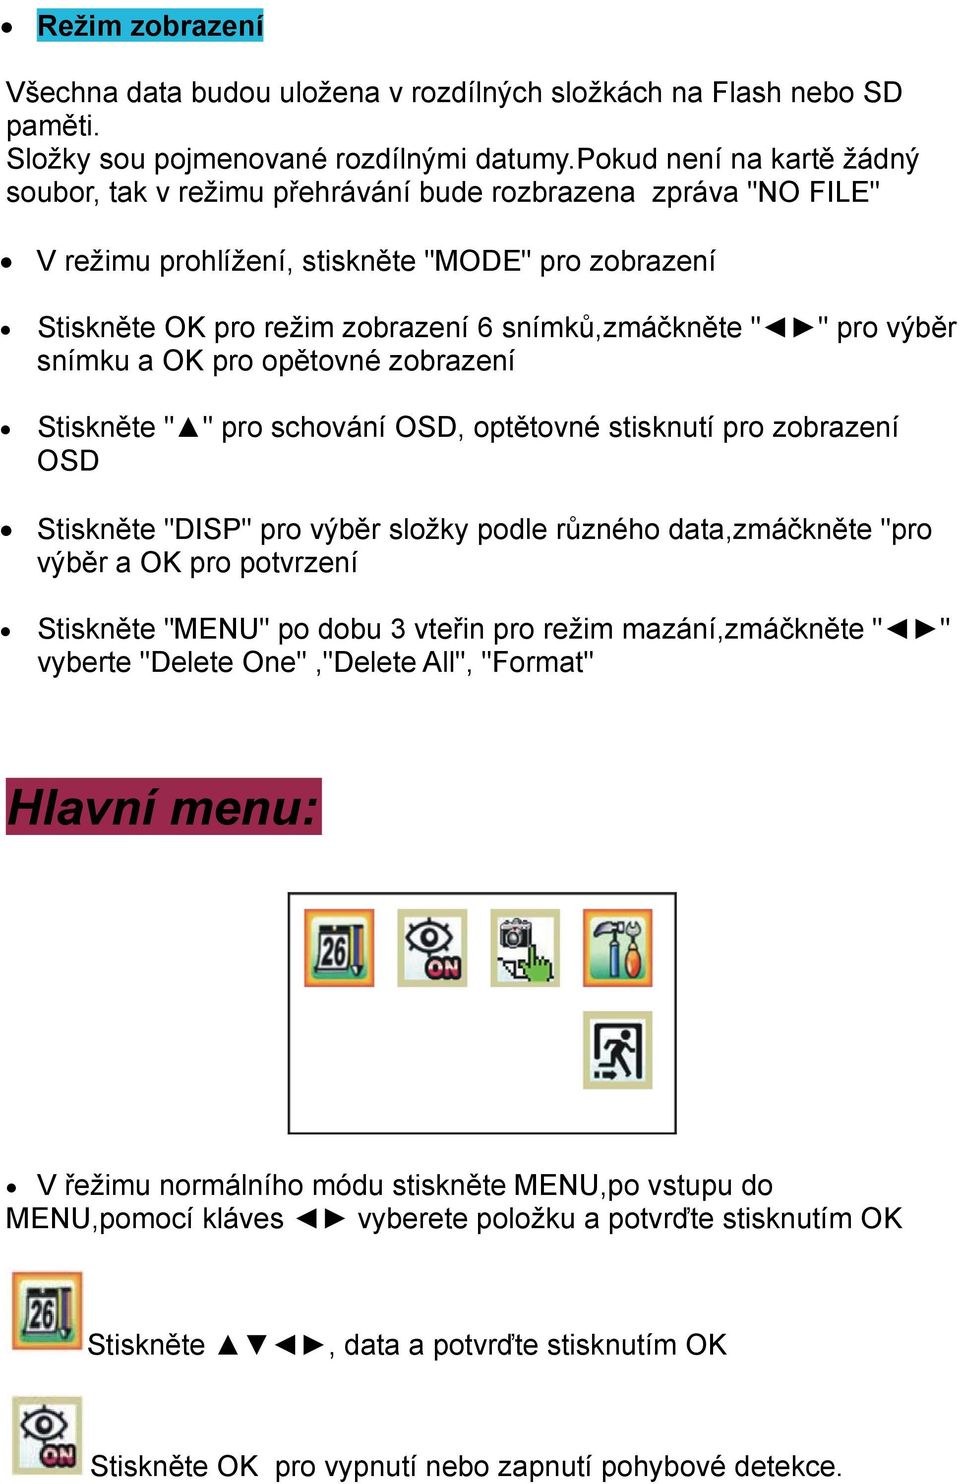 pro výběr snímku a OK pro opětovné zobrazení Stiskněte " " pro schování OSD, optětovné stisknutí pro zobrazení OSD Stiskněte "DISP" pro výběr složky podle různého data,zmáčkněte "pro výběr a OK pro